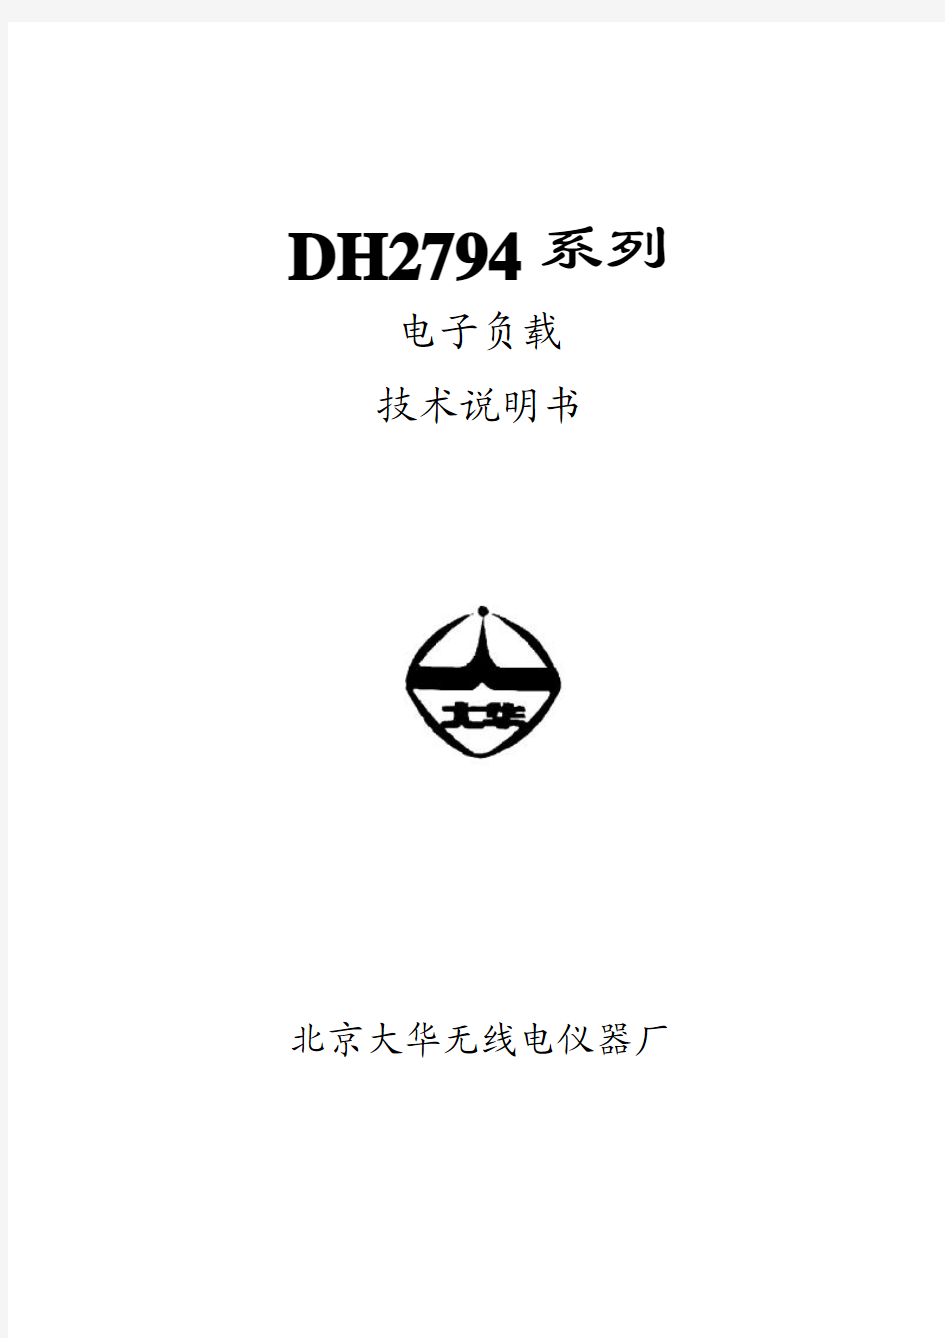 大华DH2794系列电子负载 技术说明书